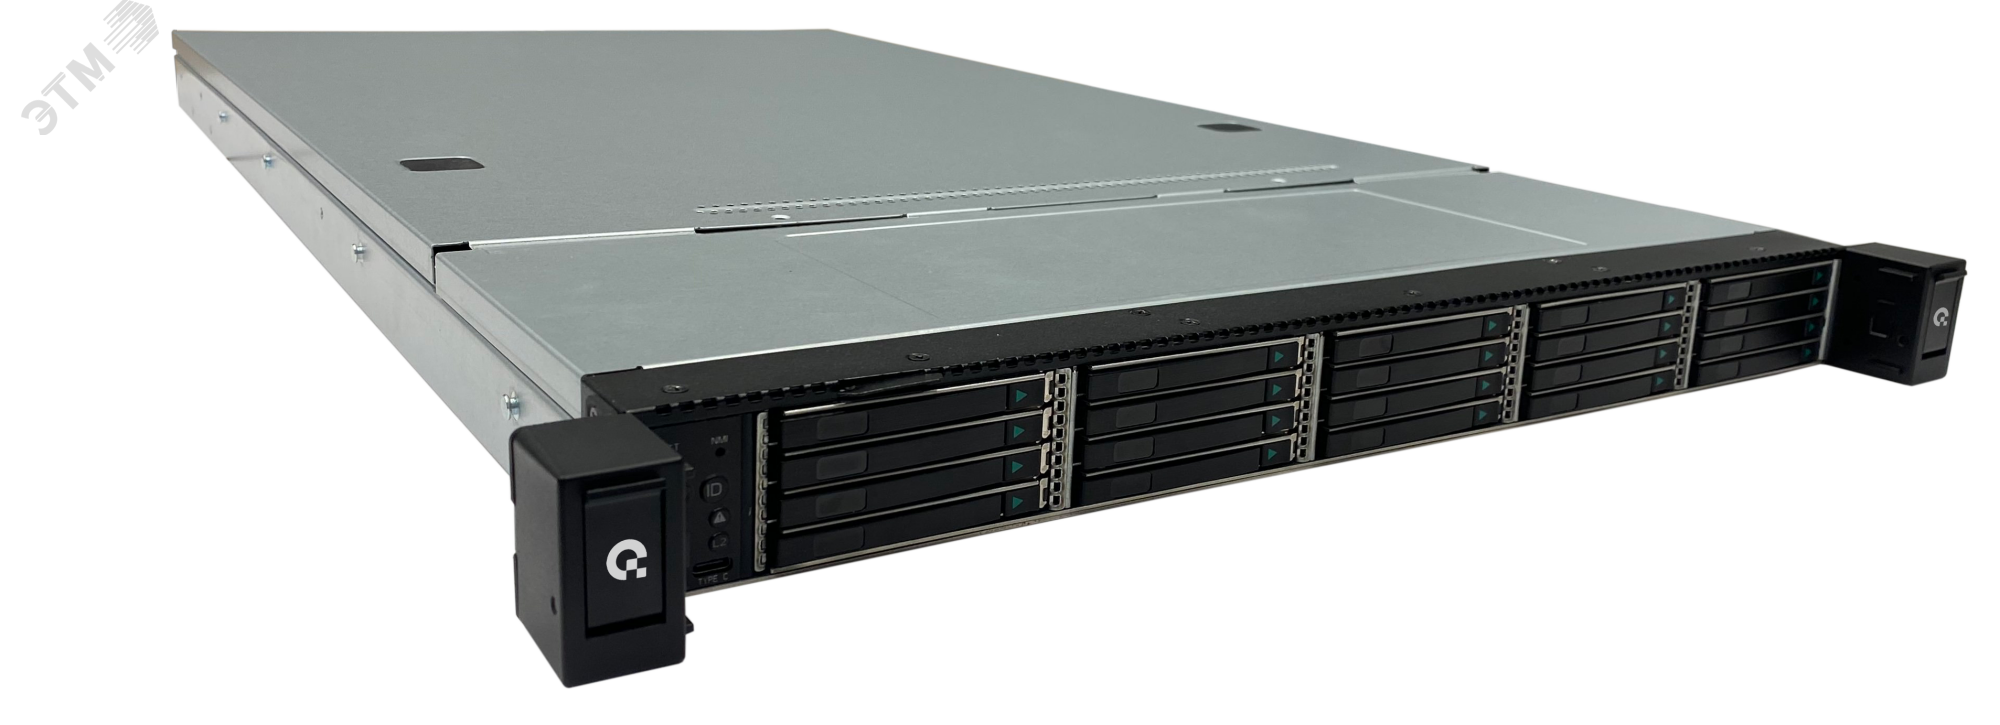 Сервер для предприятий и ЦОД D120AC 1U, Xeon Scalable v3, до 20 накопителей, ОЗУ до 8 ТБ DDR4 T50 D120AC Aquarius - превью 2